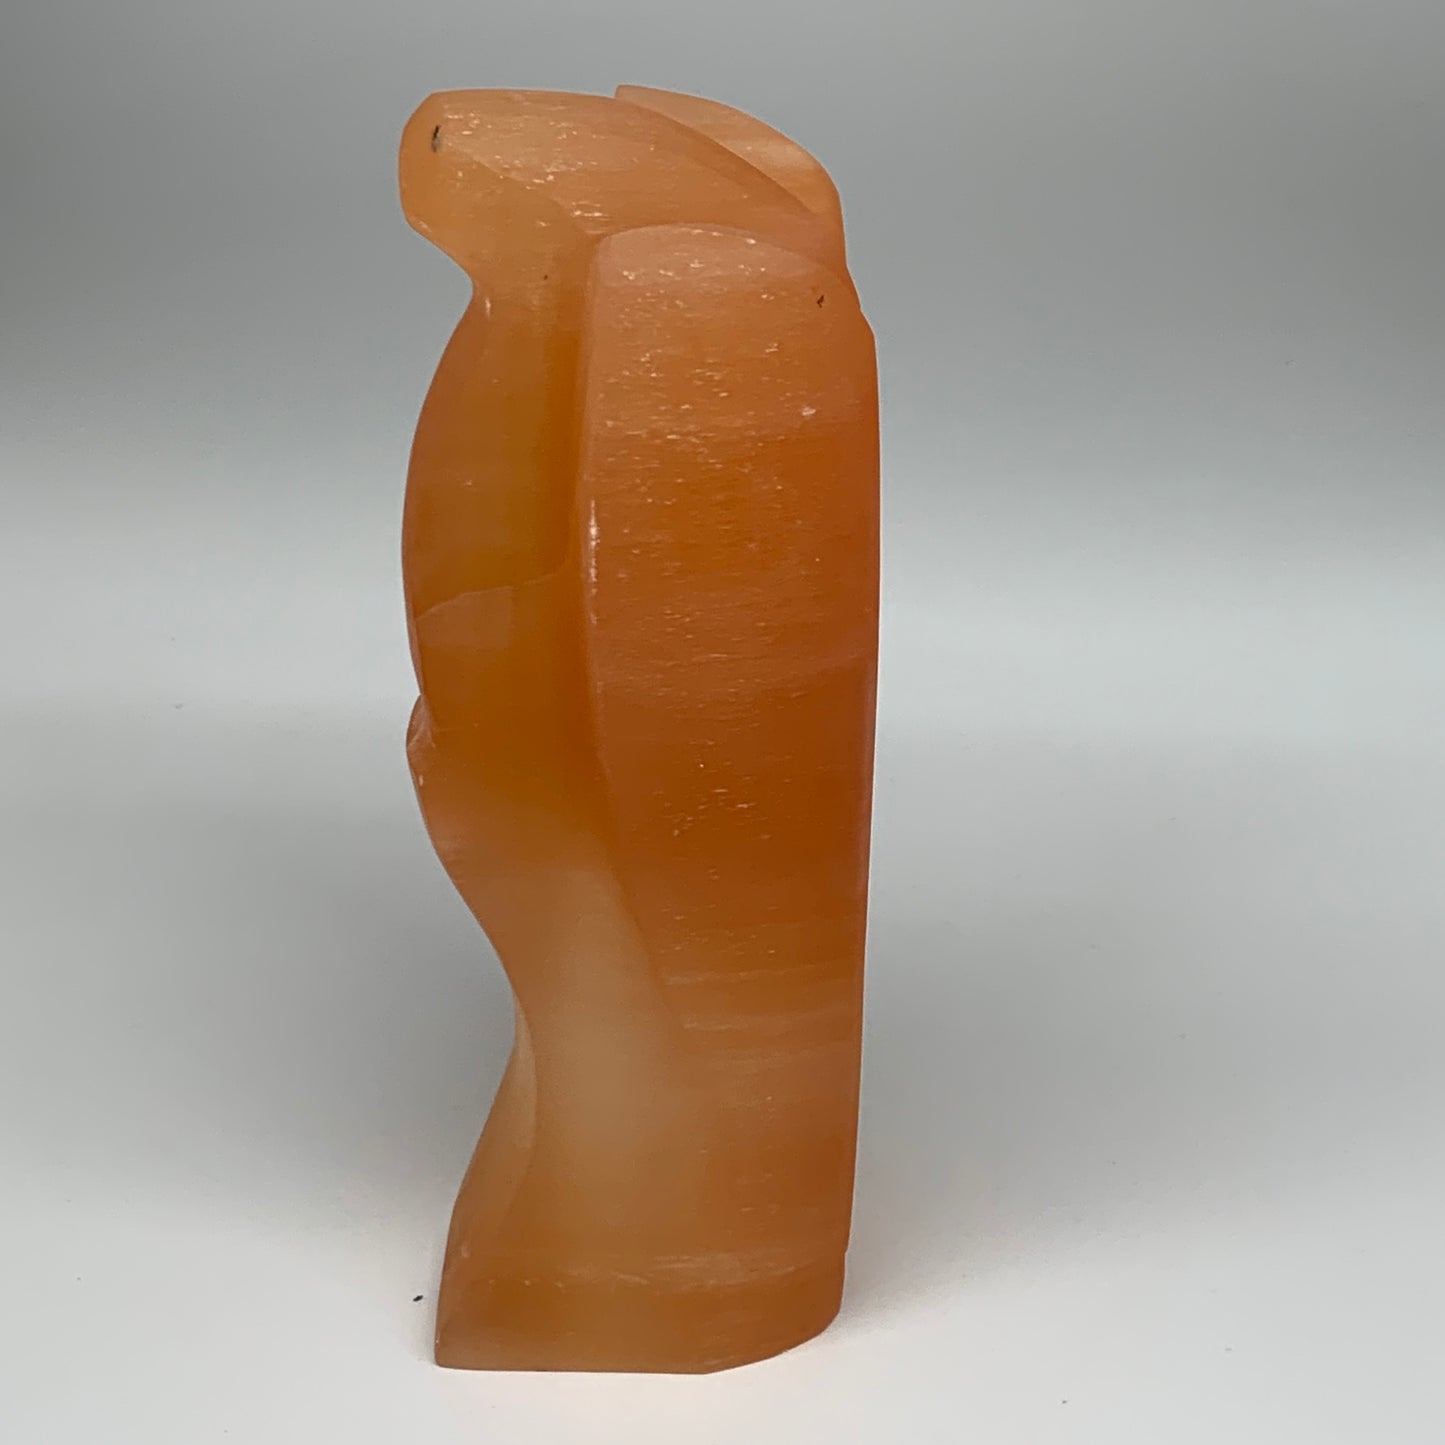 1792g, 8.25"x4.2"x2.8" Orange Selenite (Satin Spar) Angel Lamps @Morocco,B9434